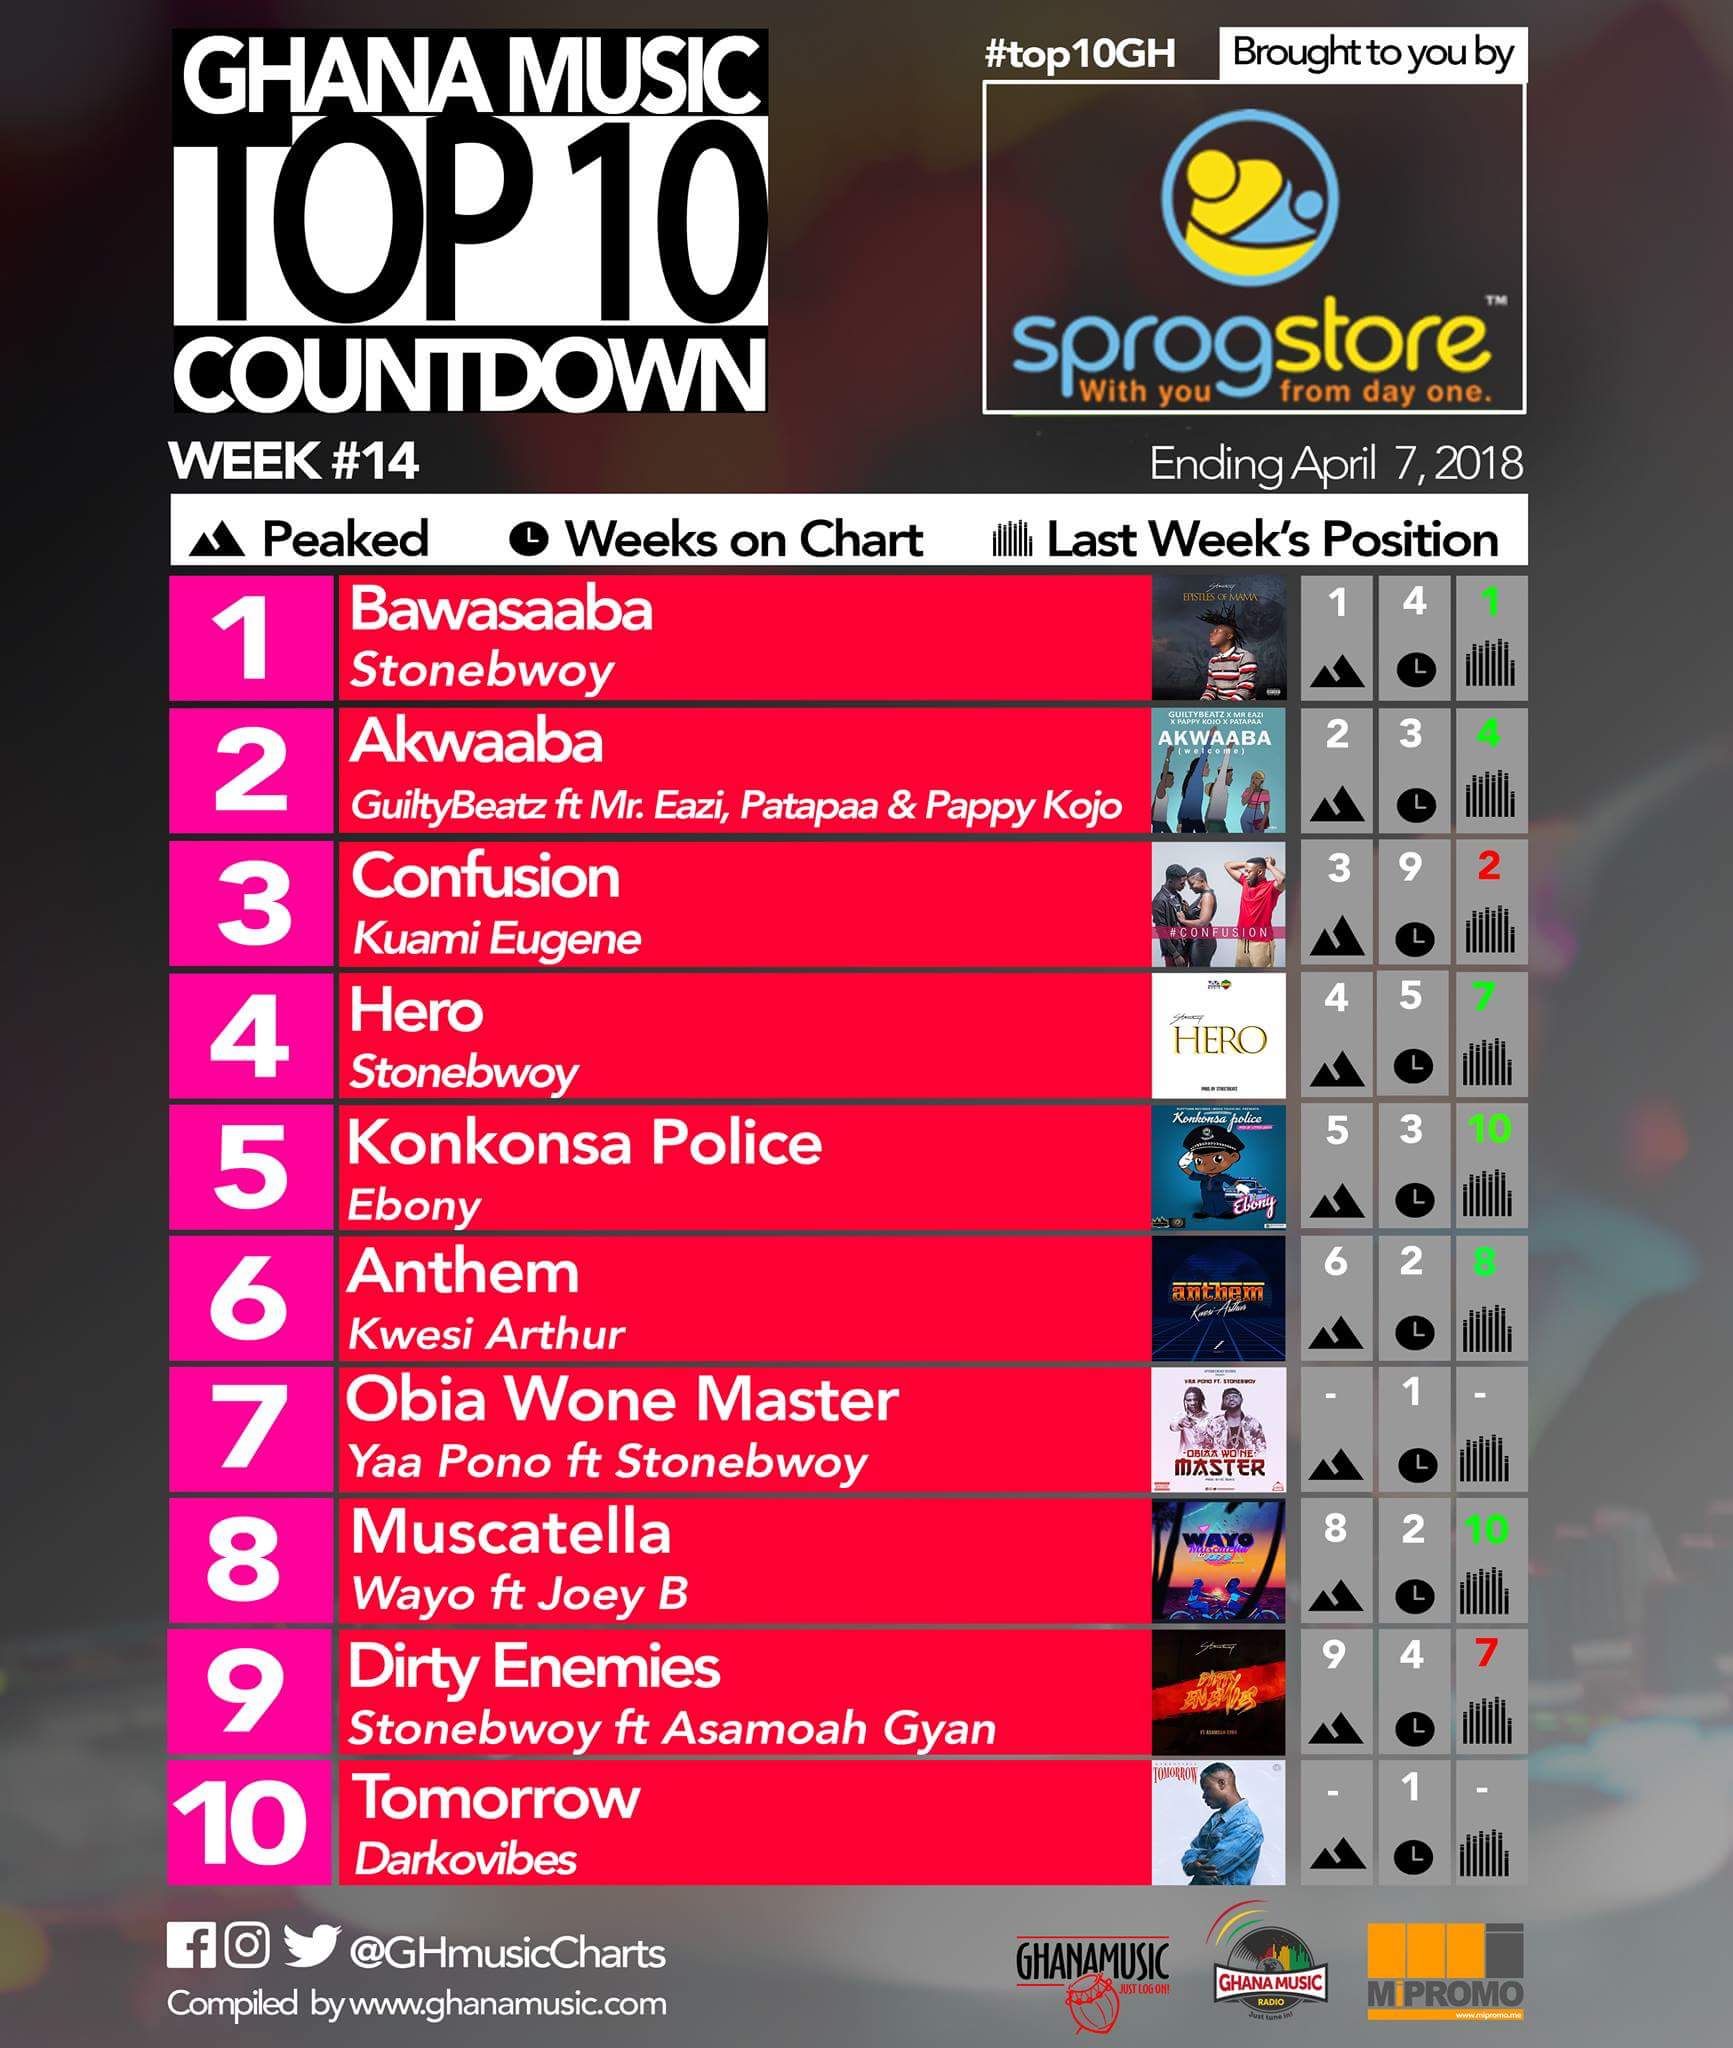 Week #14: Ghana Music Top 10 Countdown